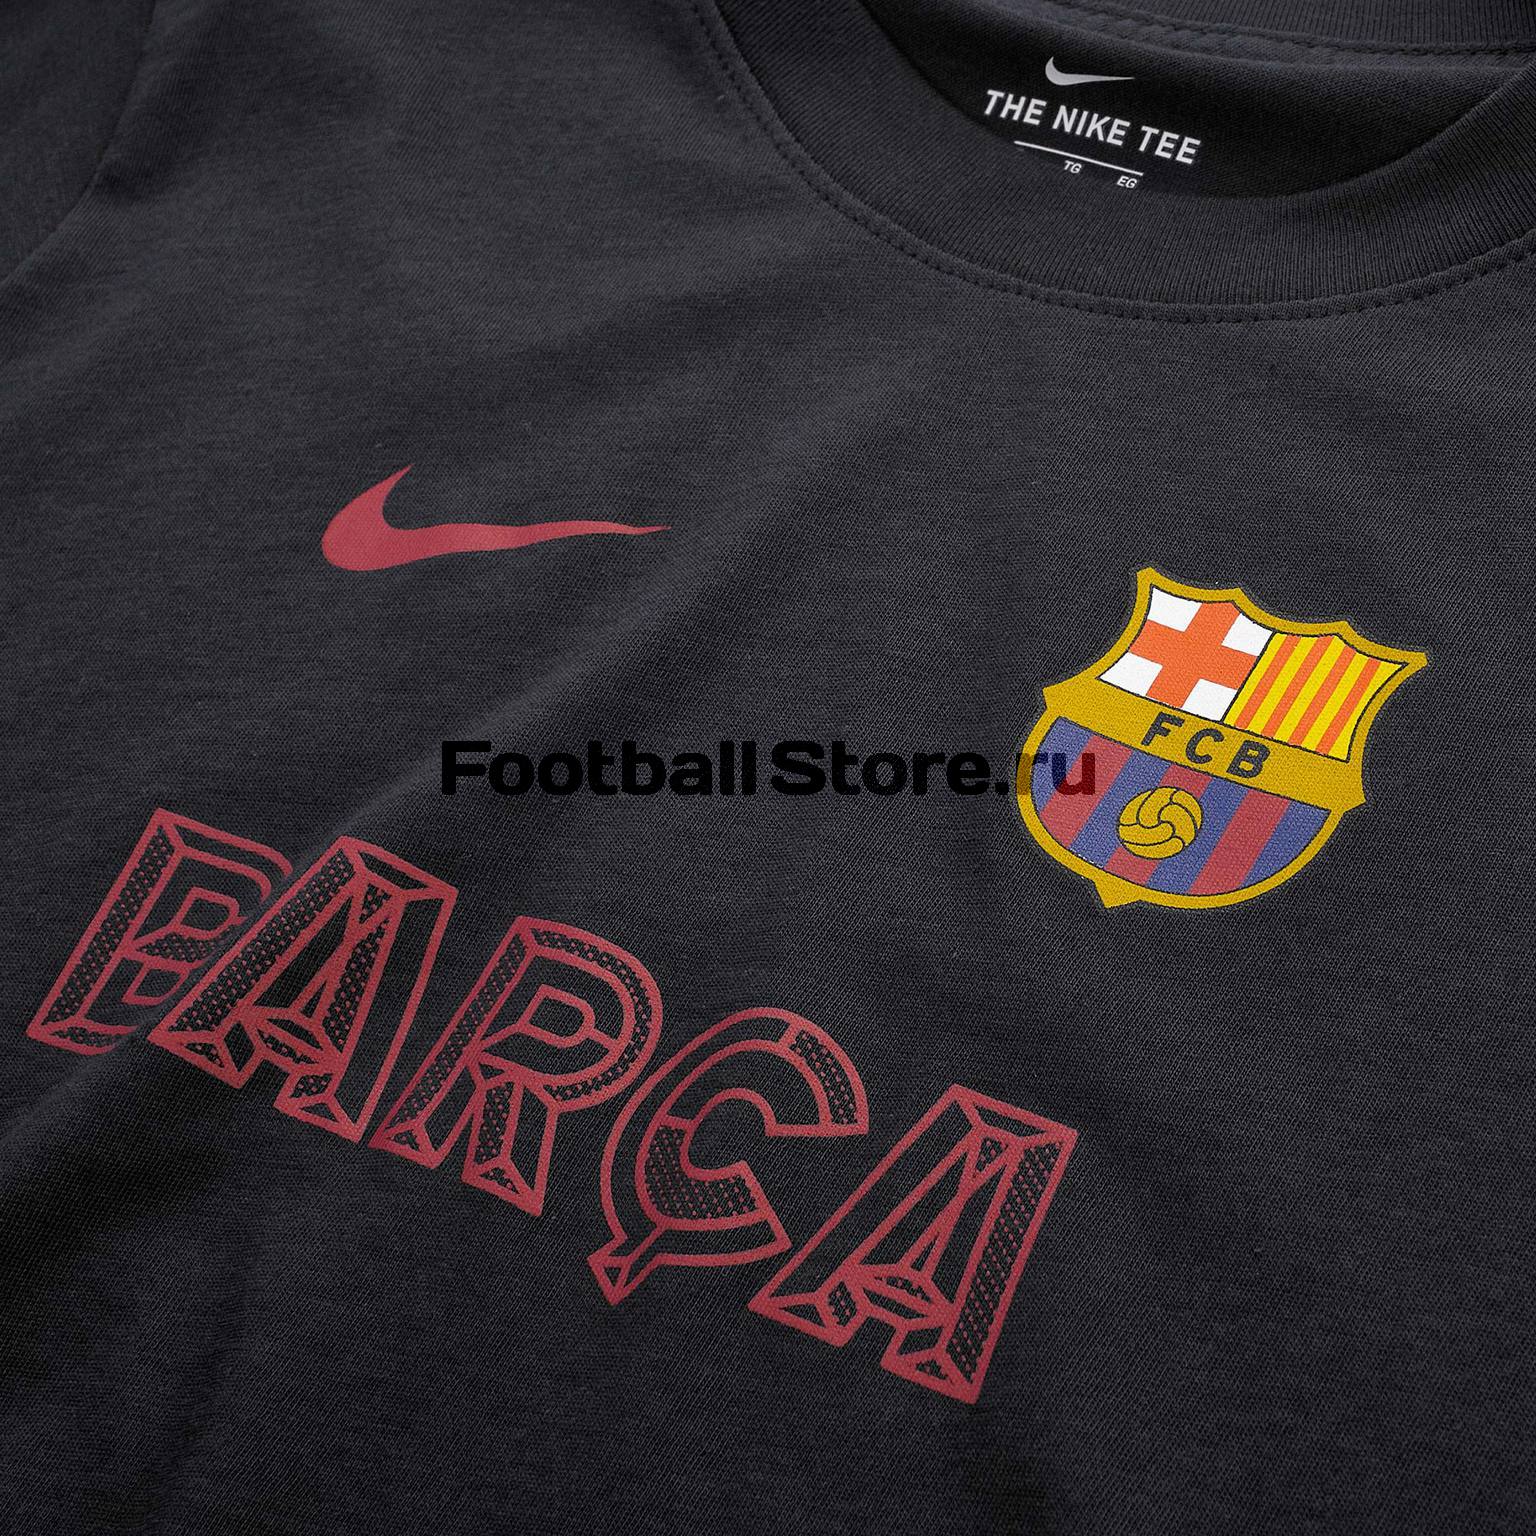 Футболка подростковая хлопковая Nike Barcelona BQ0730-475